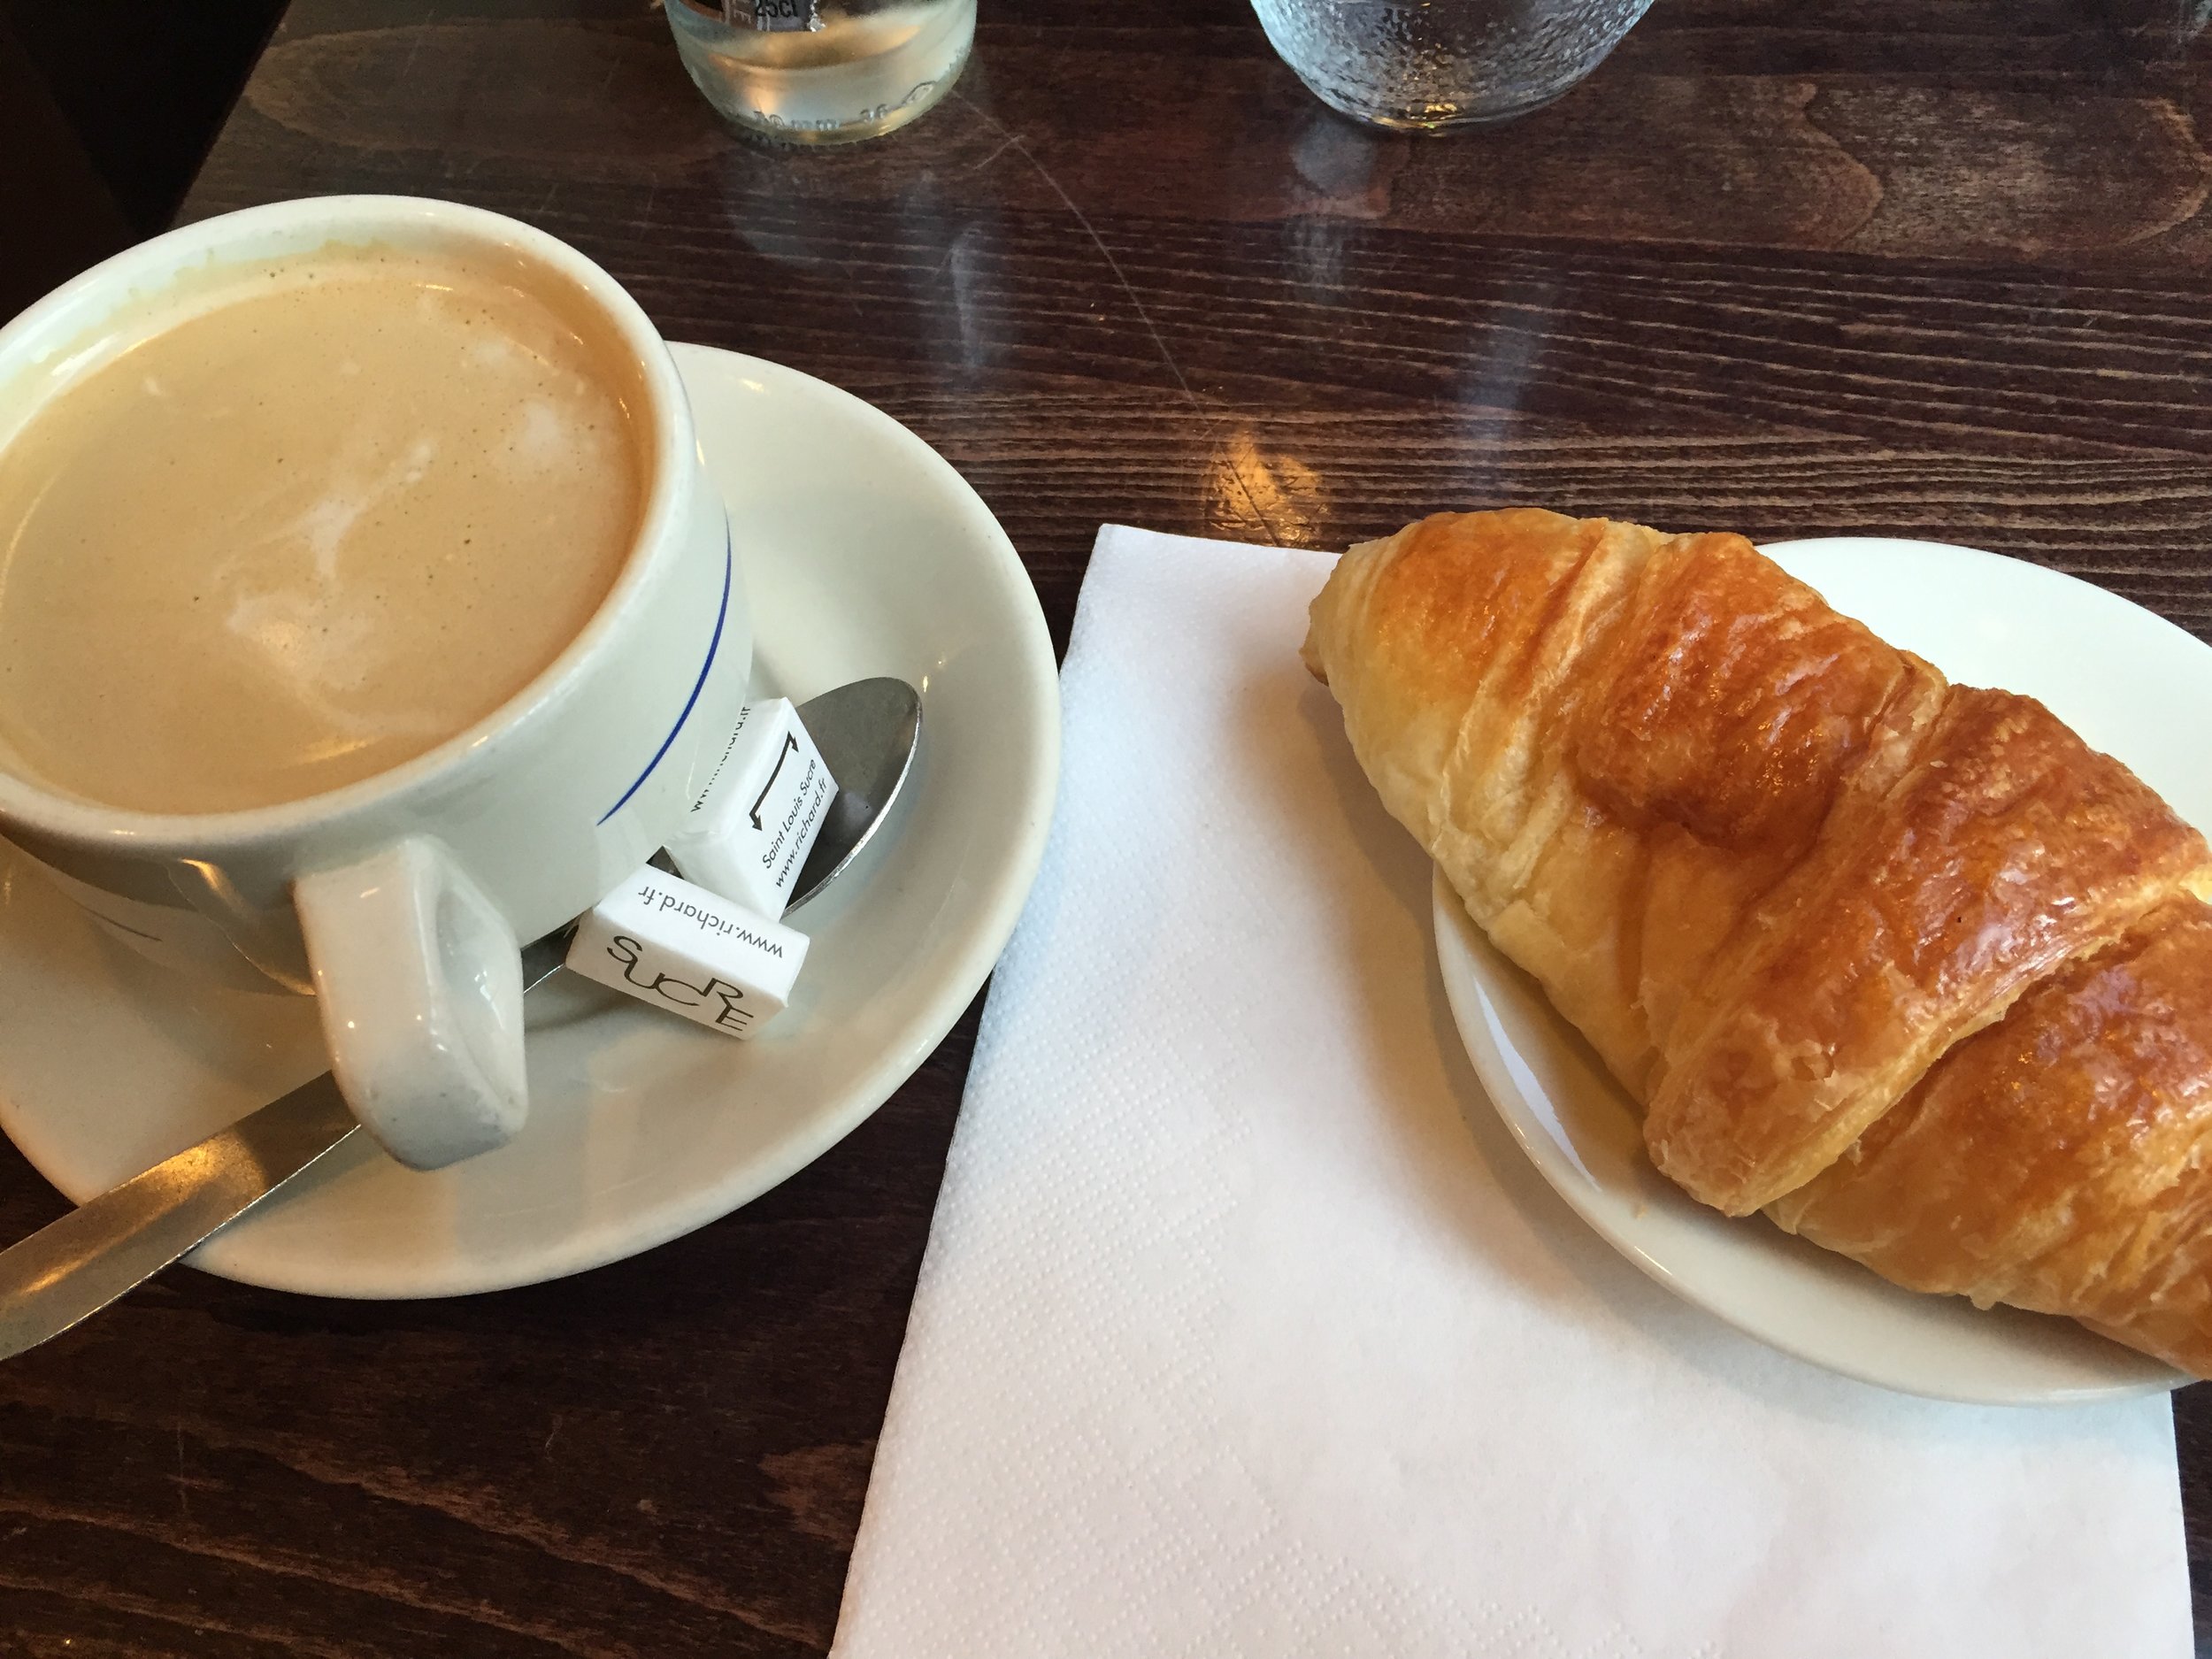 Café crème and croissant